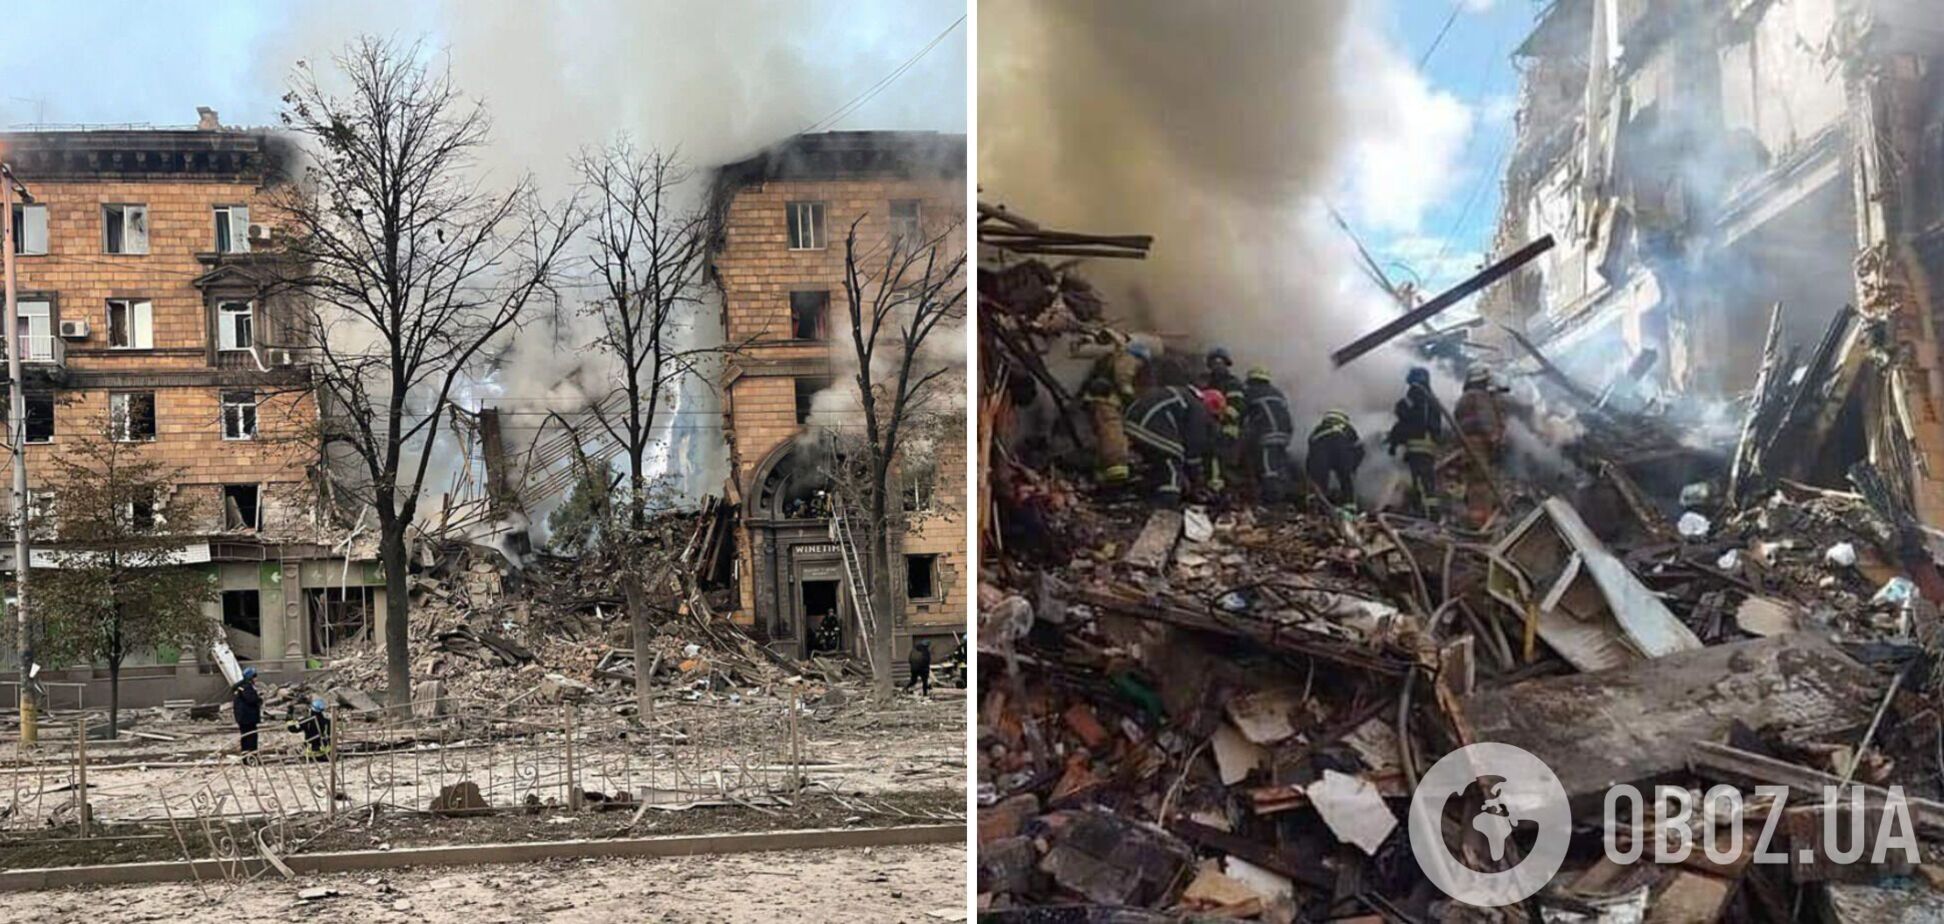 Число жертв ракетного удара РФ по домам в Запорожье возросло до 11: разбор завалов продолжается. Фото